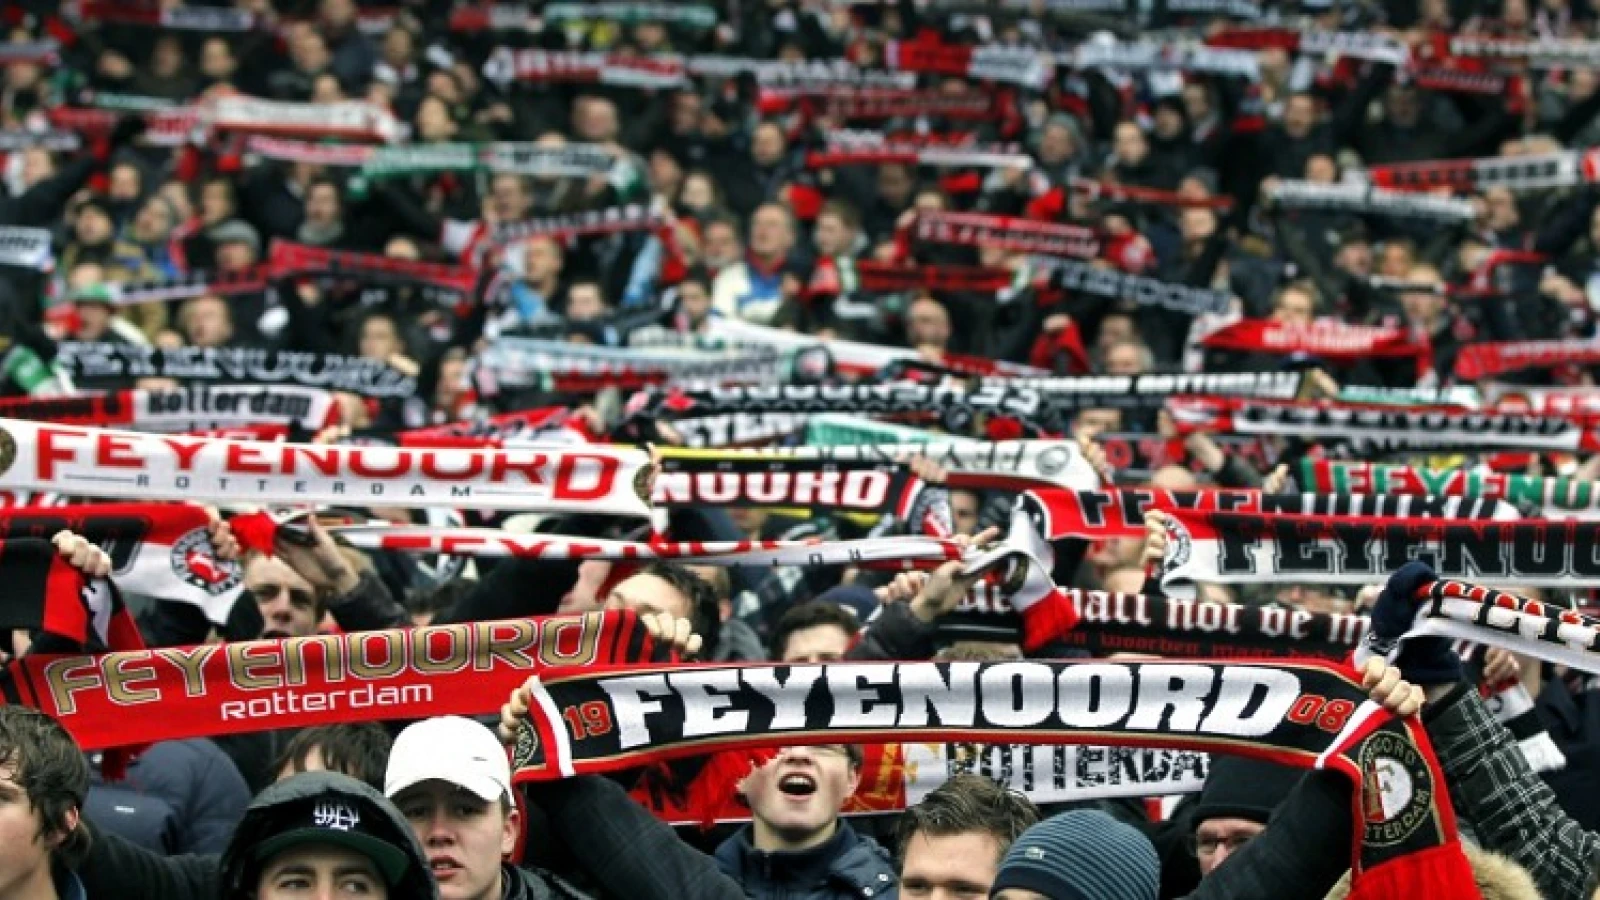 Napolitaanse politie heeft laatste woord over kaartverkoop Napoli - Feyenoord